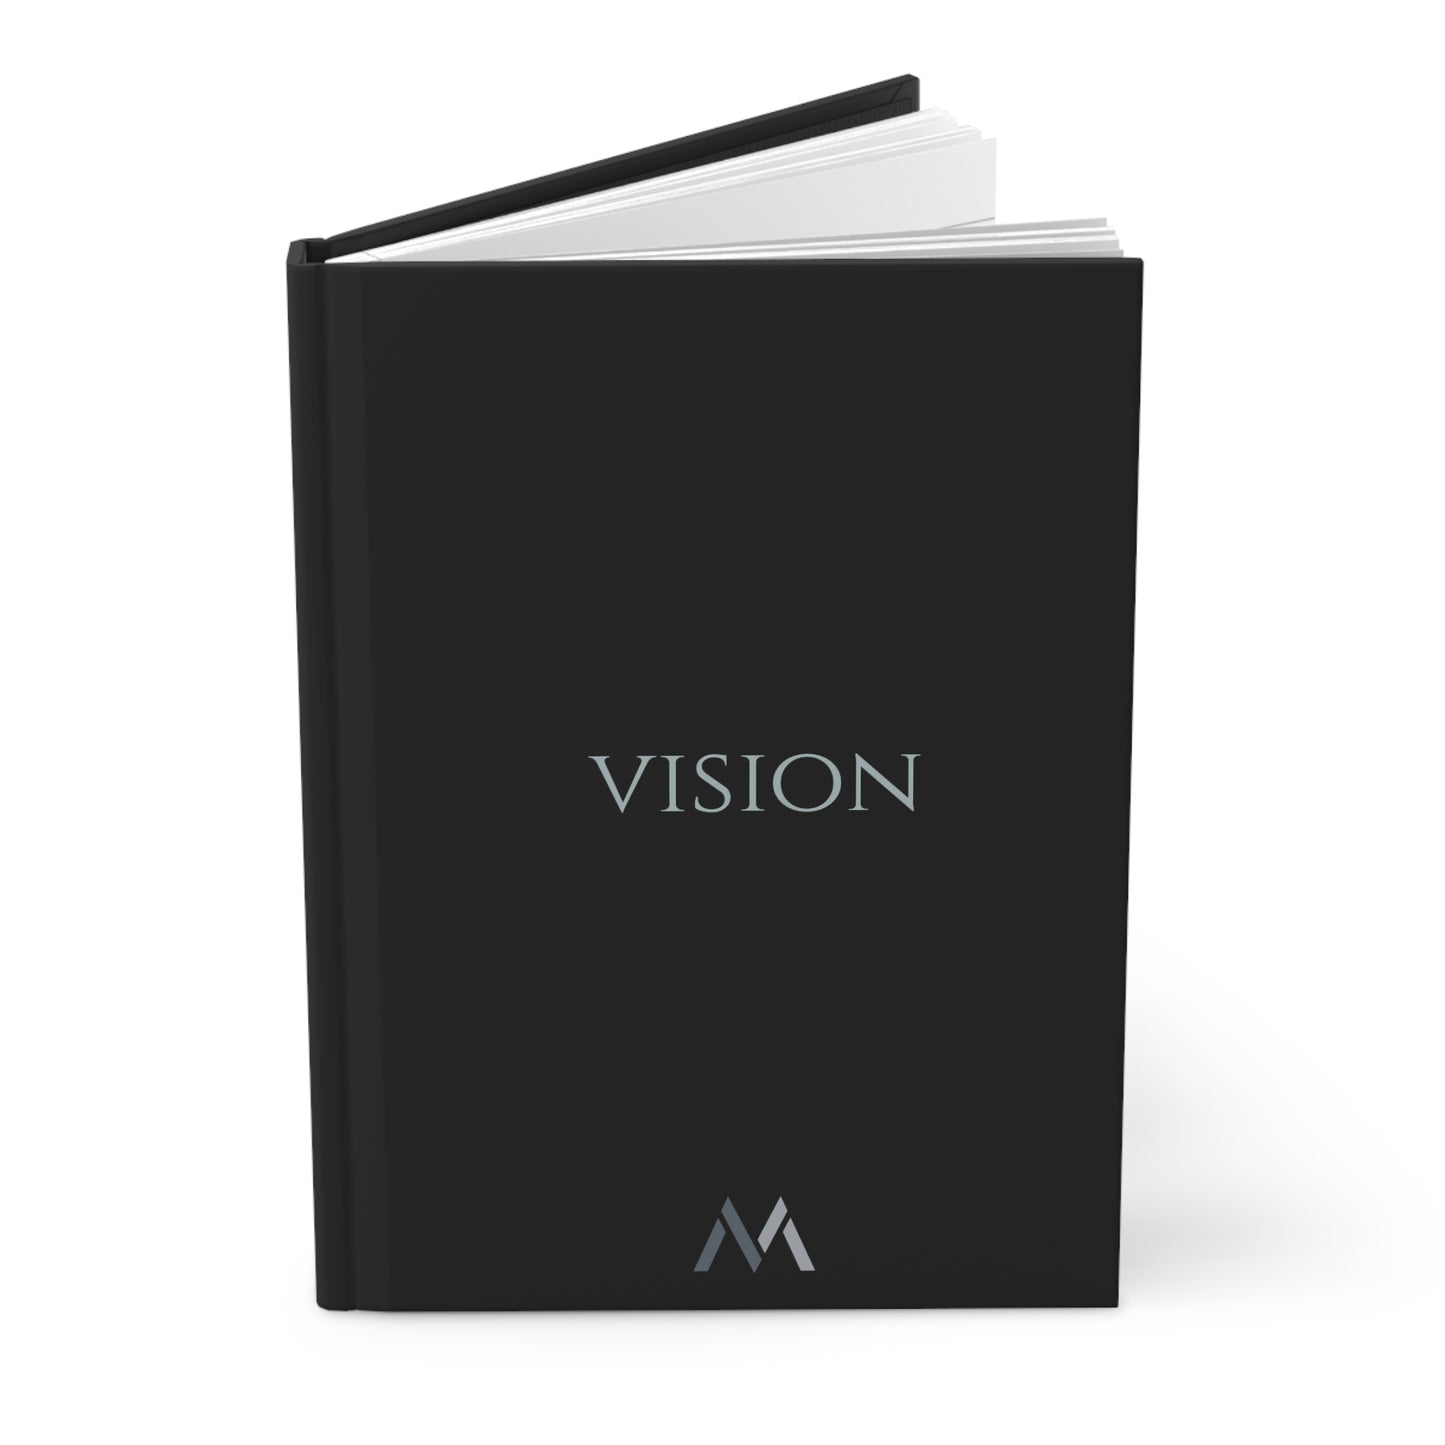 "VISION" Hard Cover Matte Black Journal